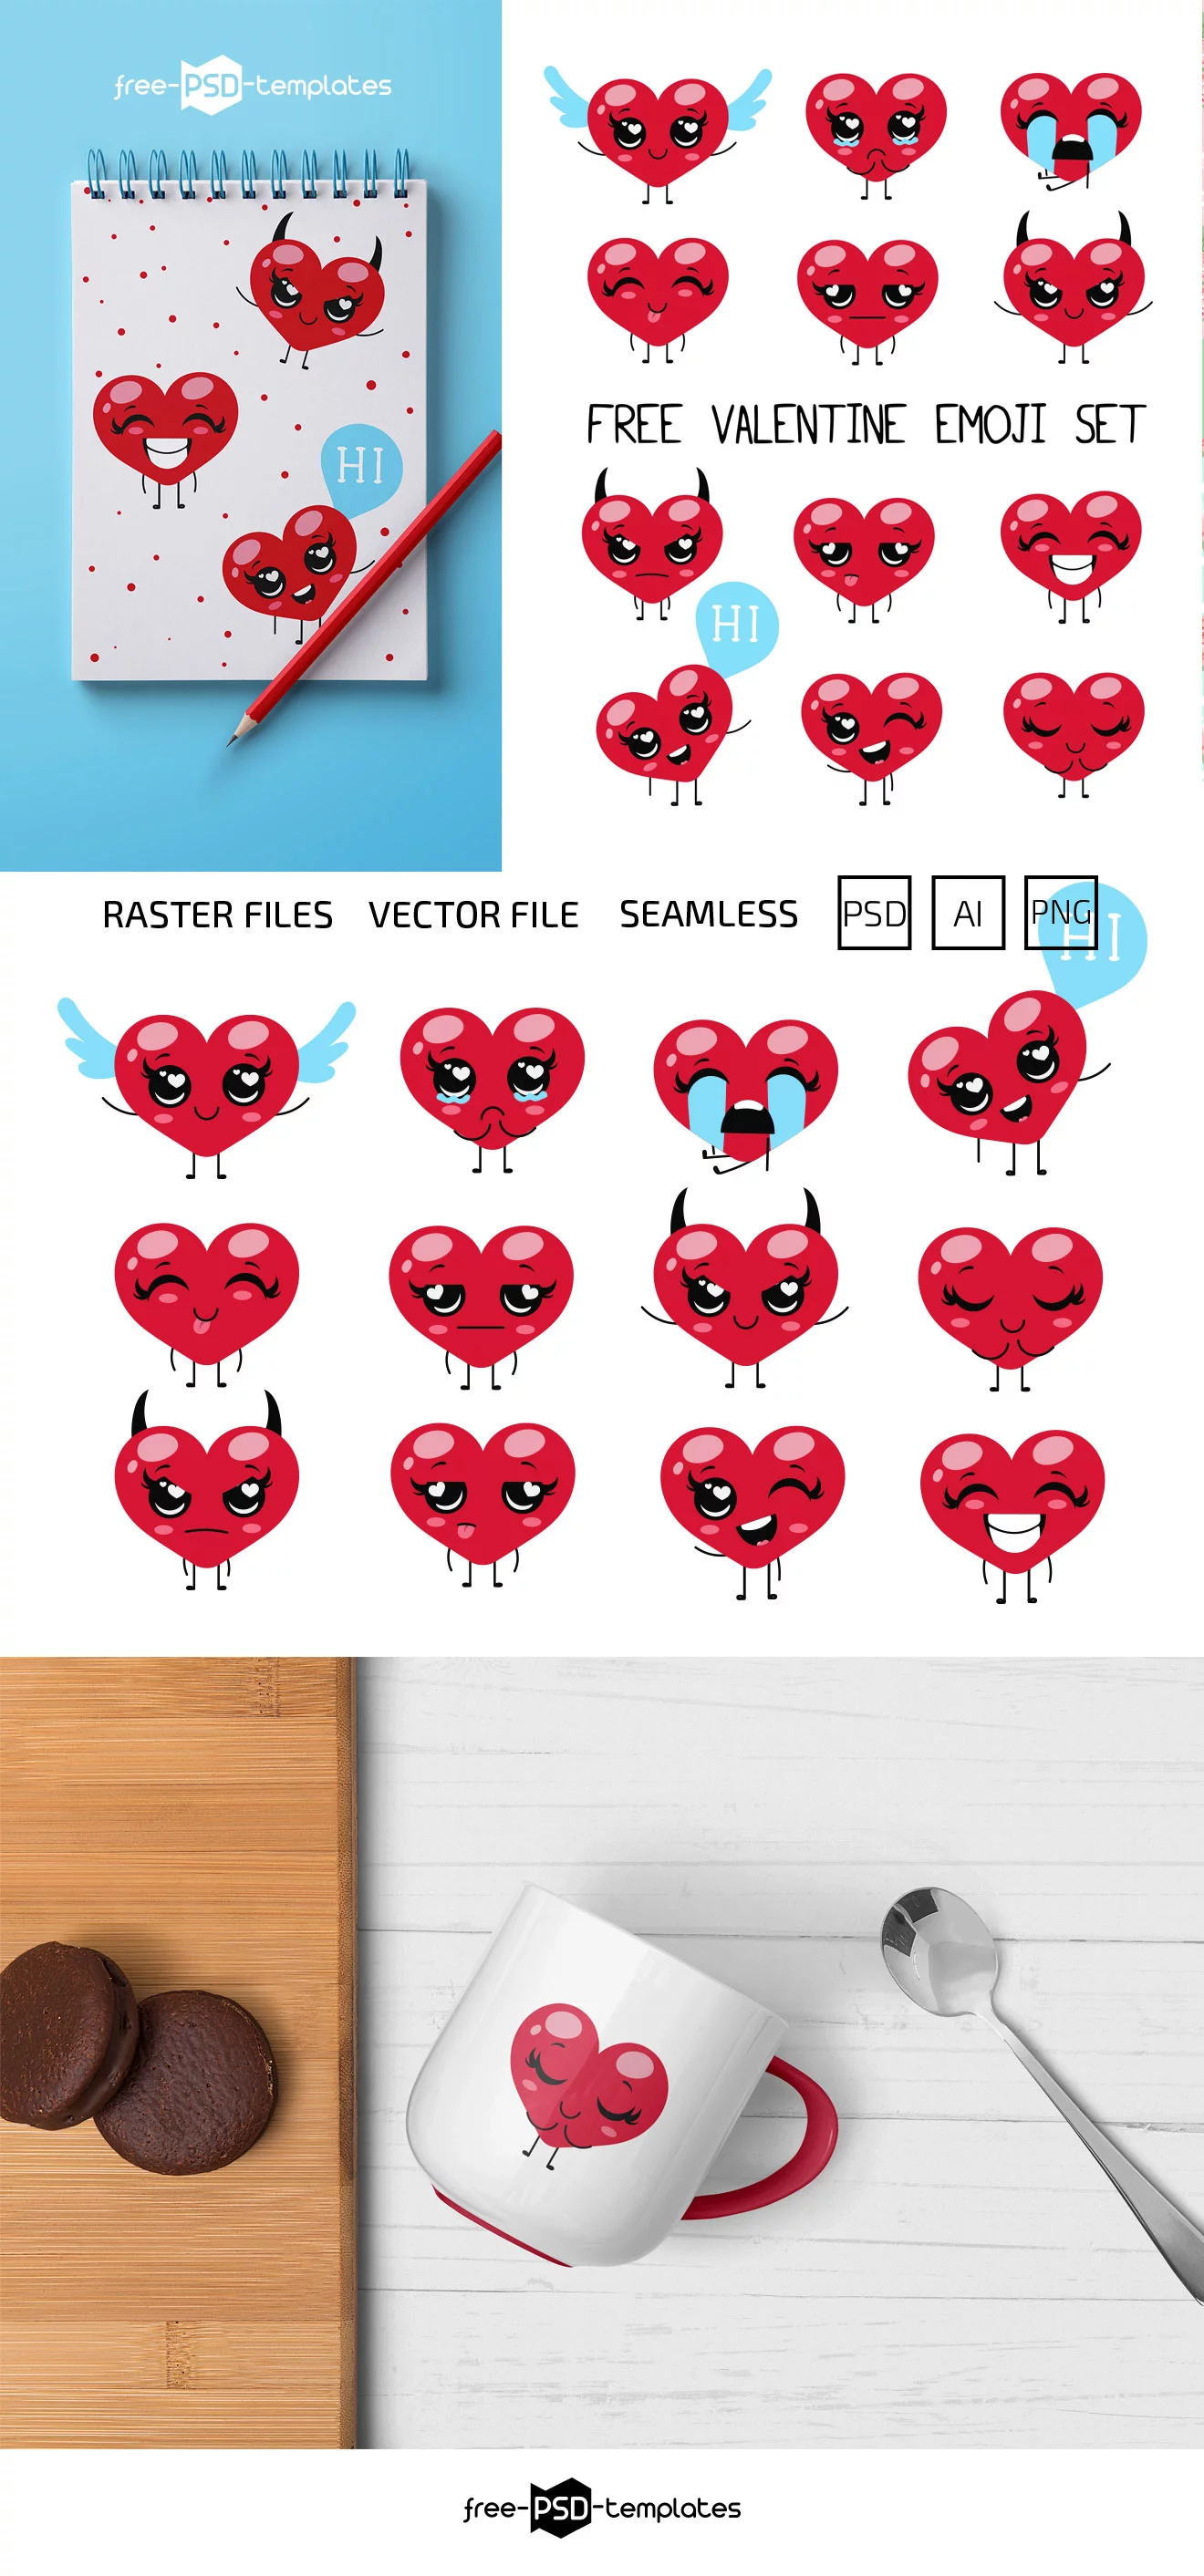 Free Valentine Emoji Set